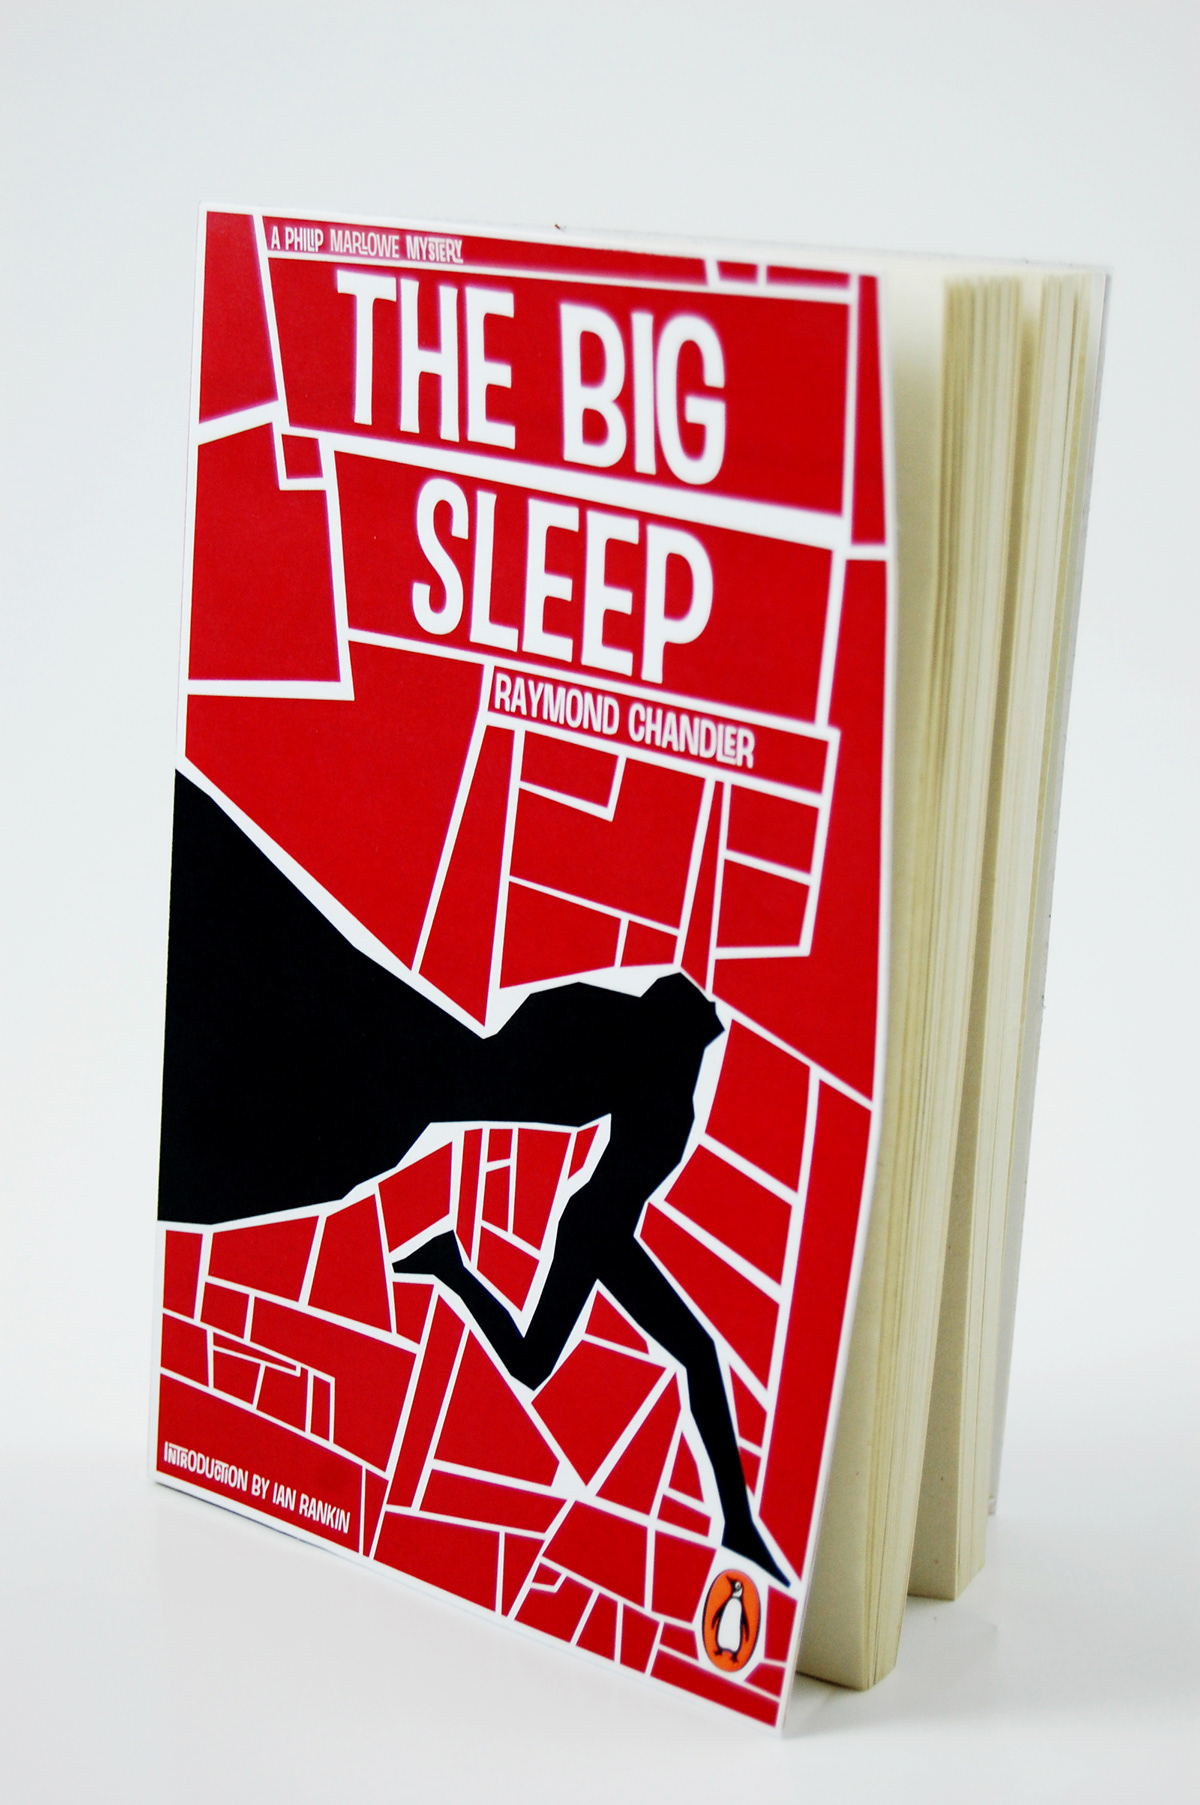 penguin the big sleep saul bass steven marking  book Penguin Awards editorial design  design book cover penguin book cover